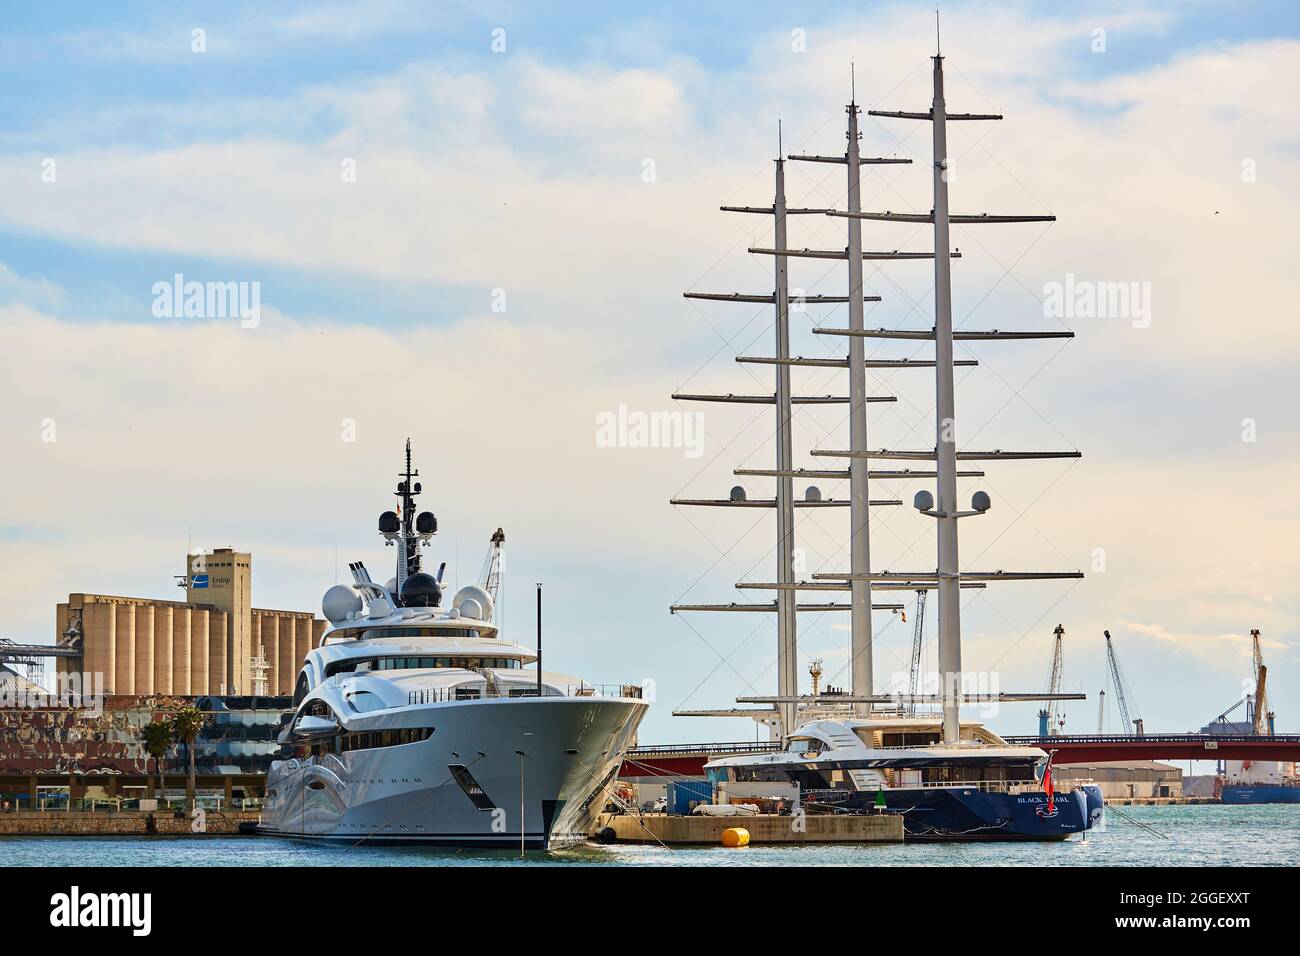 Tarragona, España - 6 de abril de 2019: el yate de lujo perla negra  estacionada en el puerto marítimo Fotografía de stock - Alamy